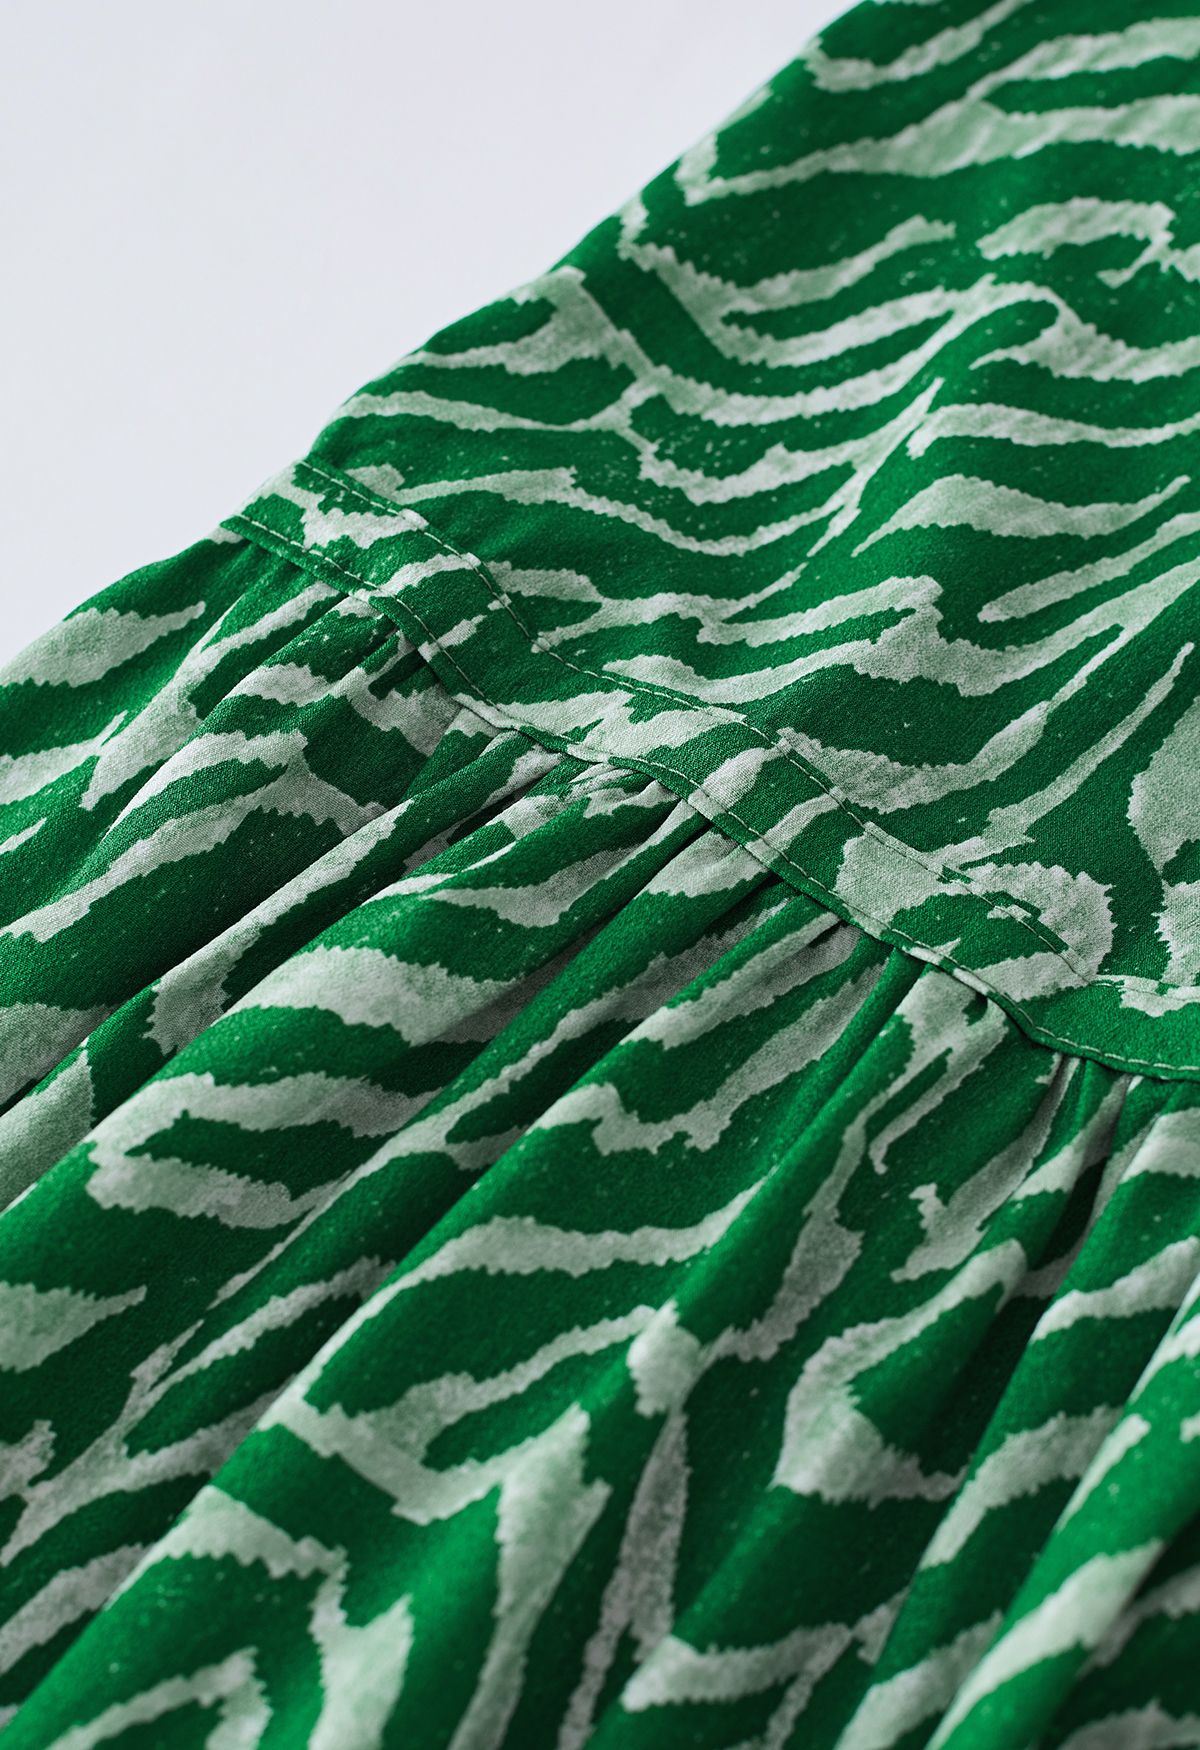 Vestido midi com decote em V e estampa de zebra em verde